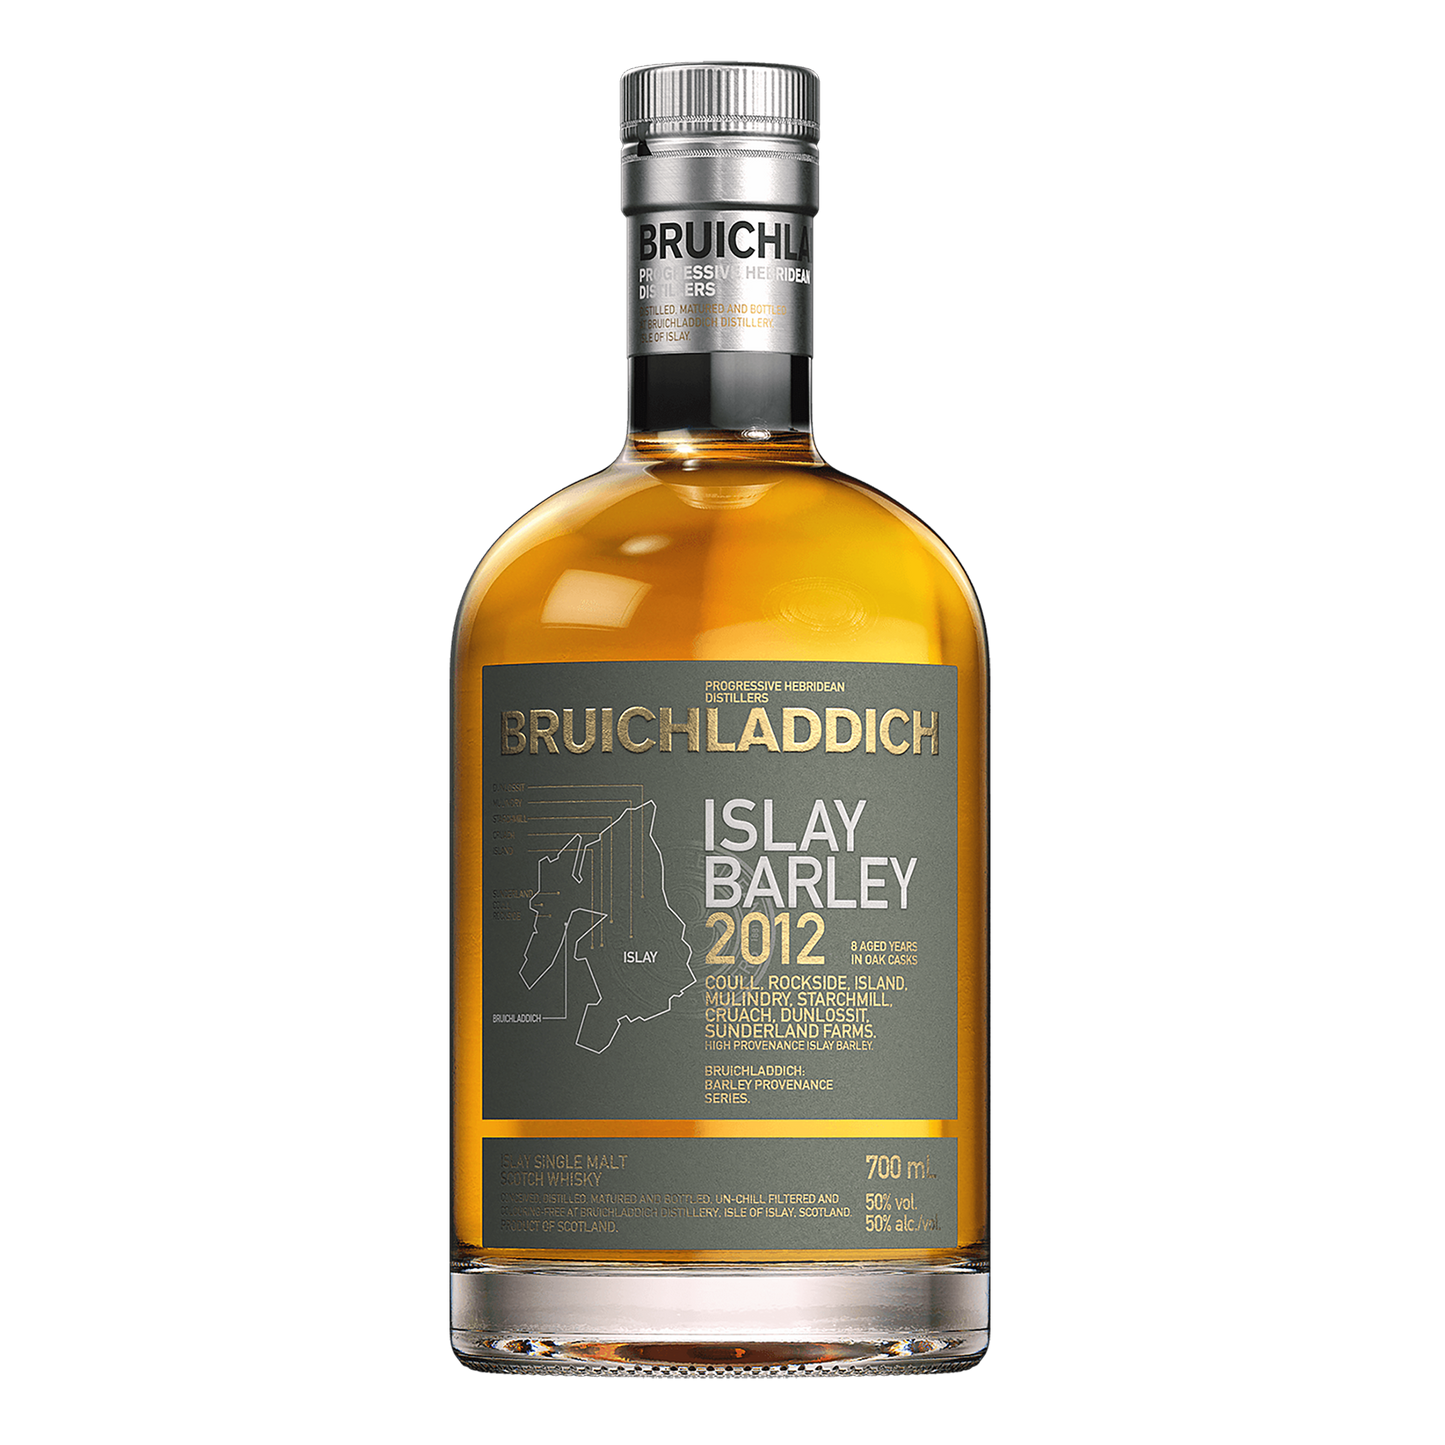 Bruichladdich Islay Barley Unpeated Single Malt Scotch Whisky 700ml (2012 Release)